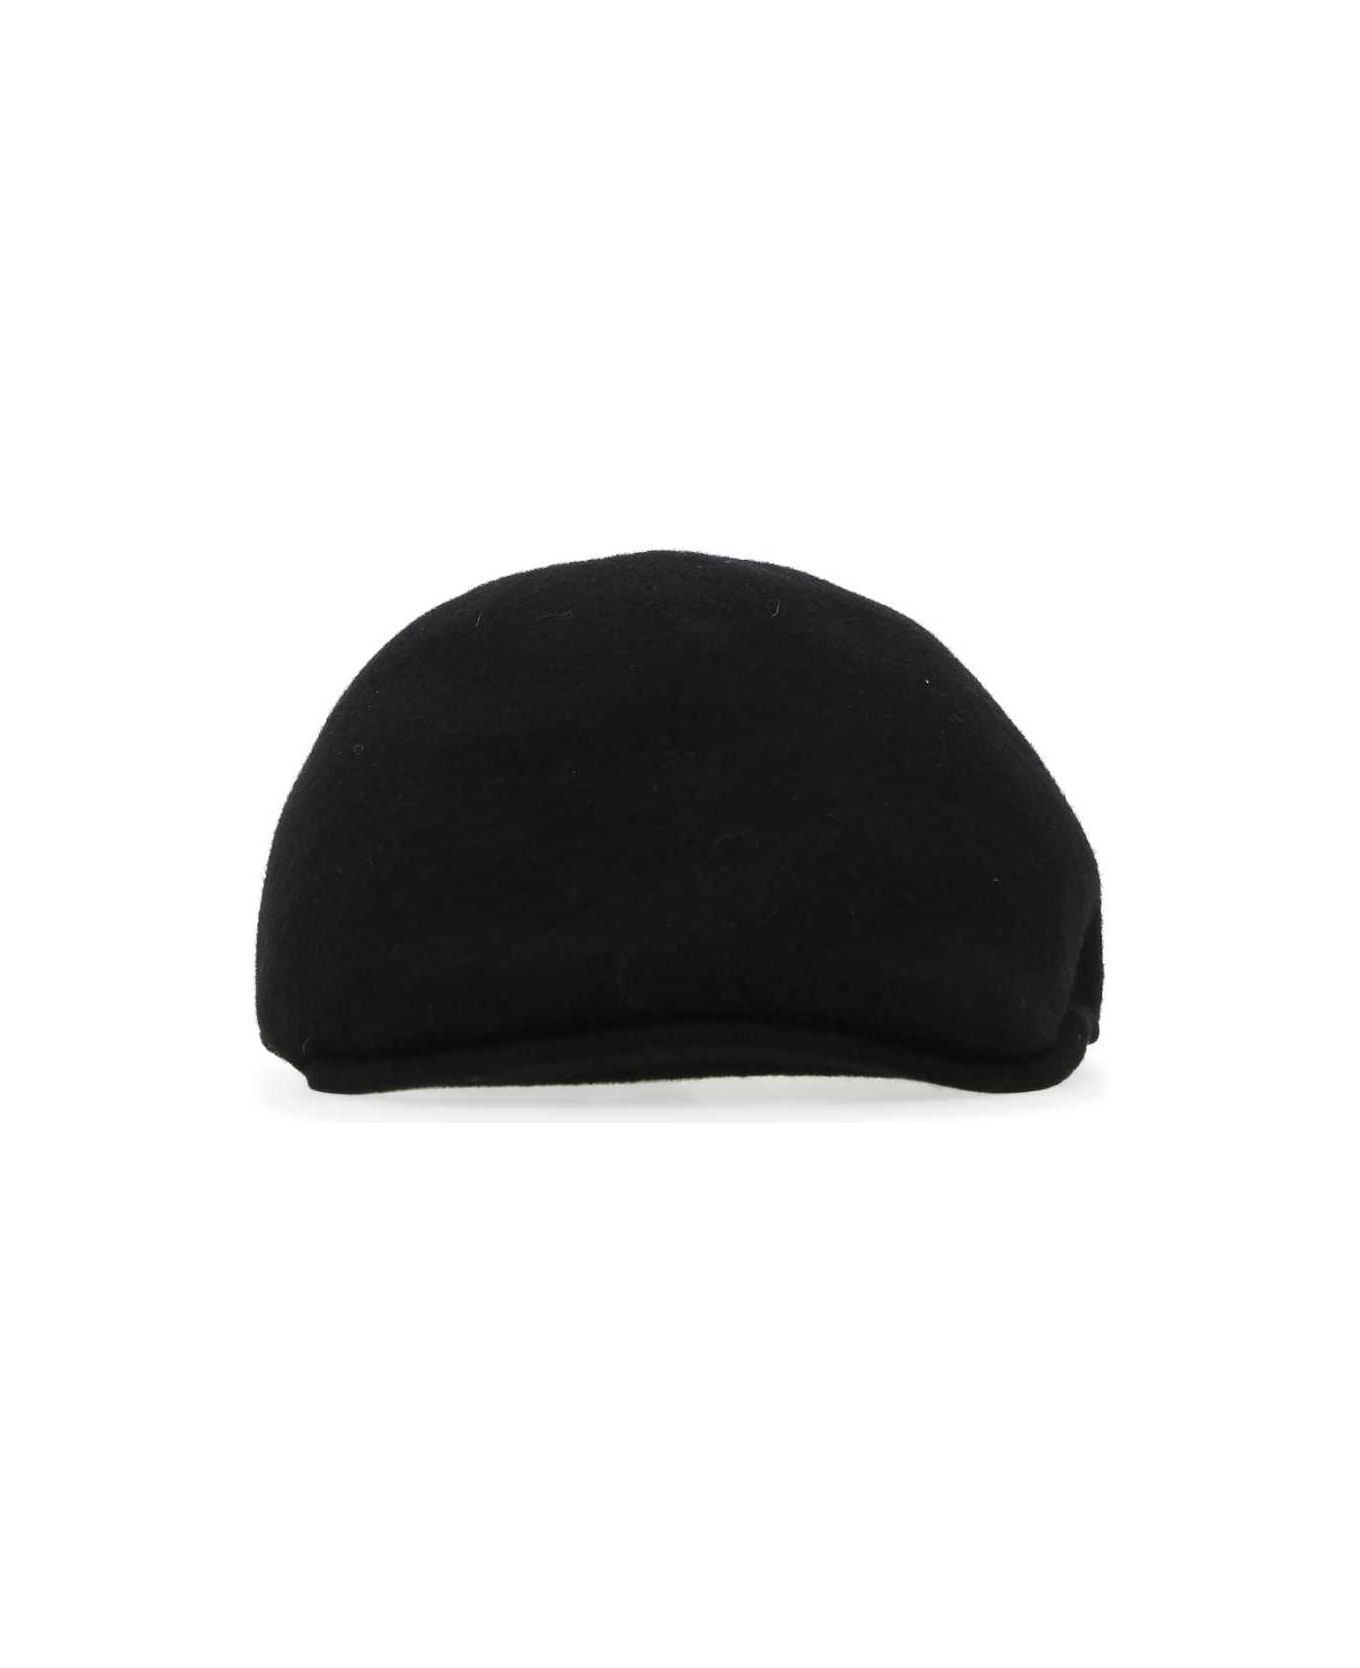 Kangol Black Felt Baker Boy Hat - BK001 帽子